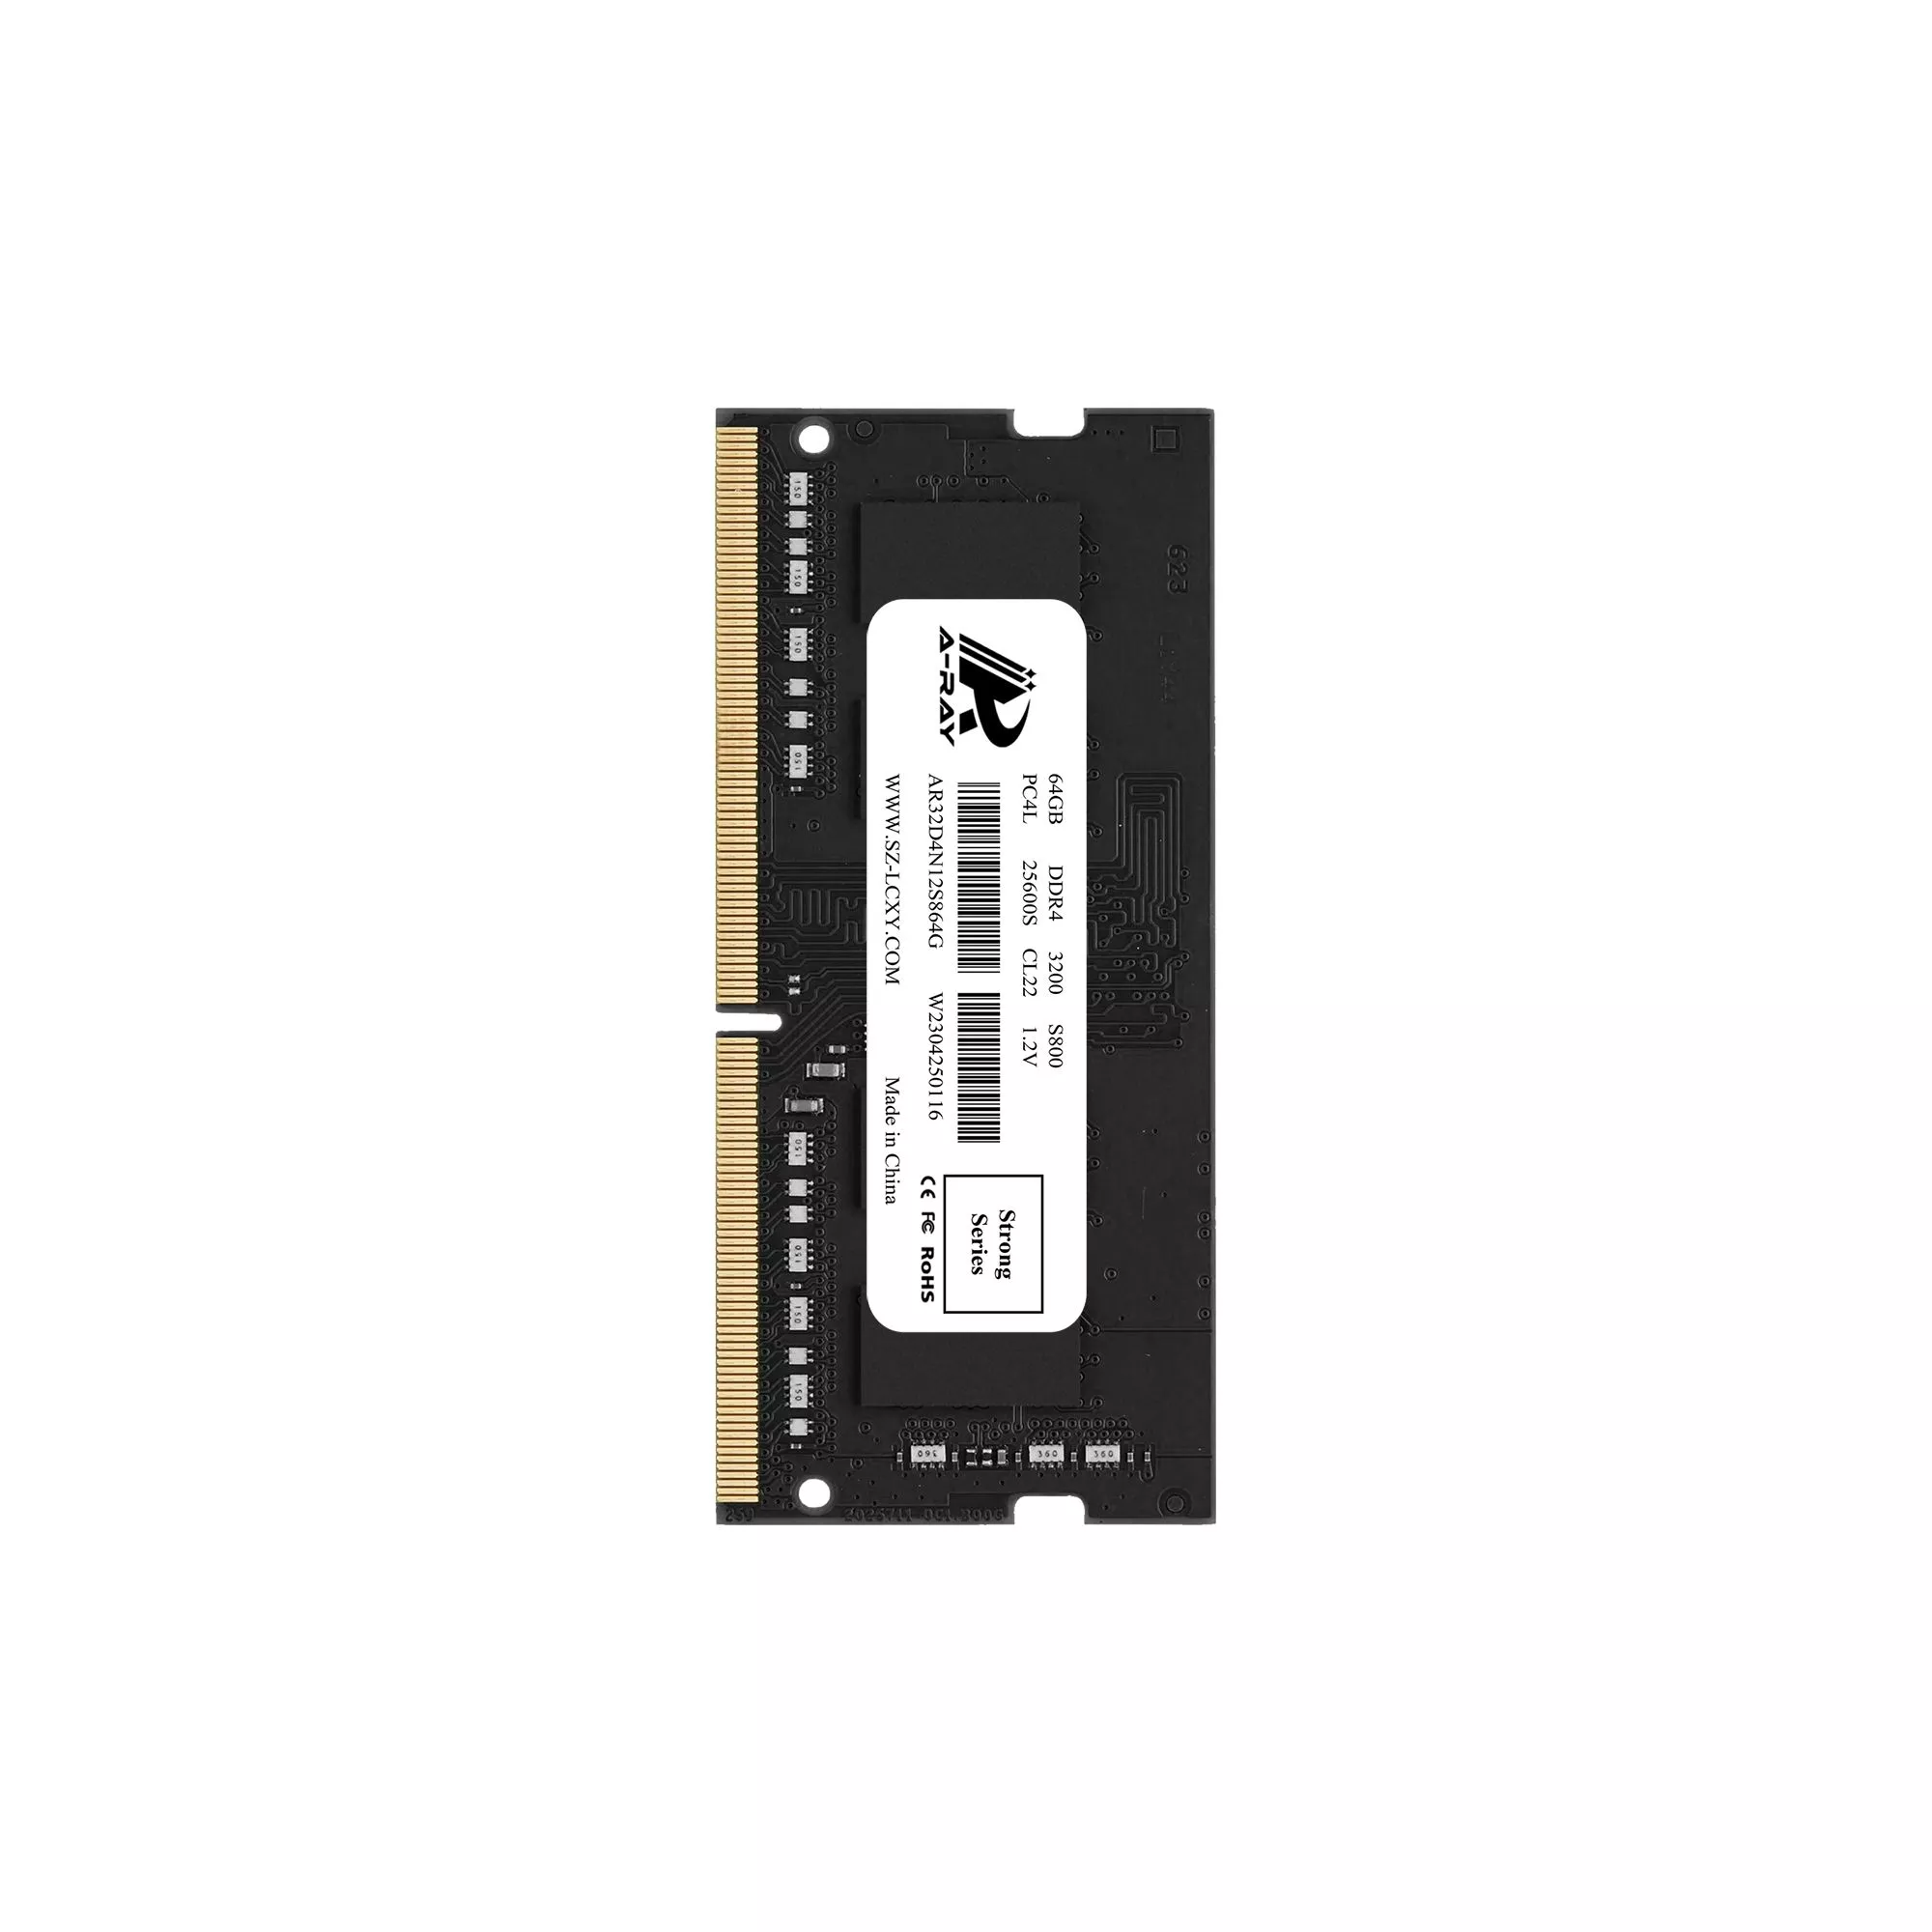 Bộ nhớ trong Ram A-Ray 64GB DDR4 Bus 3200 Mhz Laptop S800 25600 MB/s P/N: AR32D4N12S864G